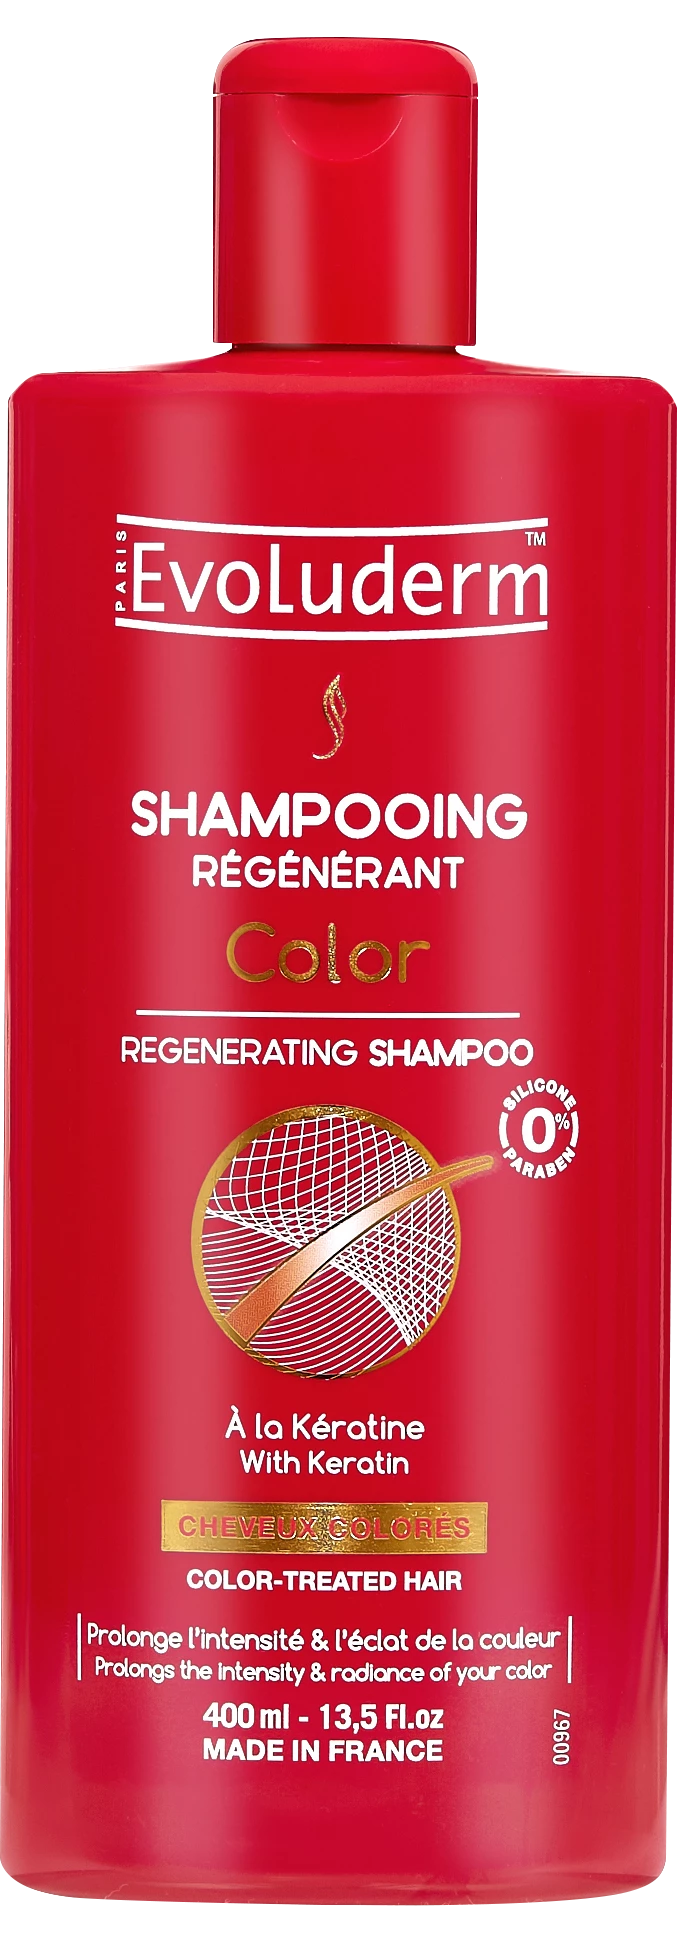 Shampoing Régénérant Color 400ml - Evoluderm